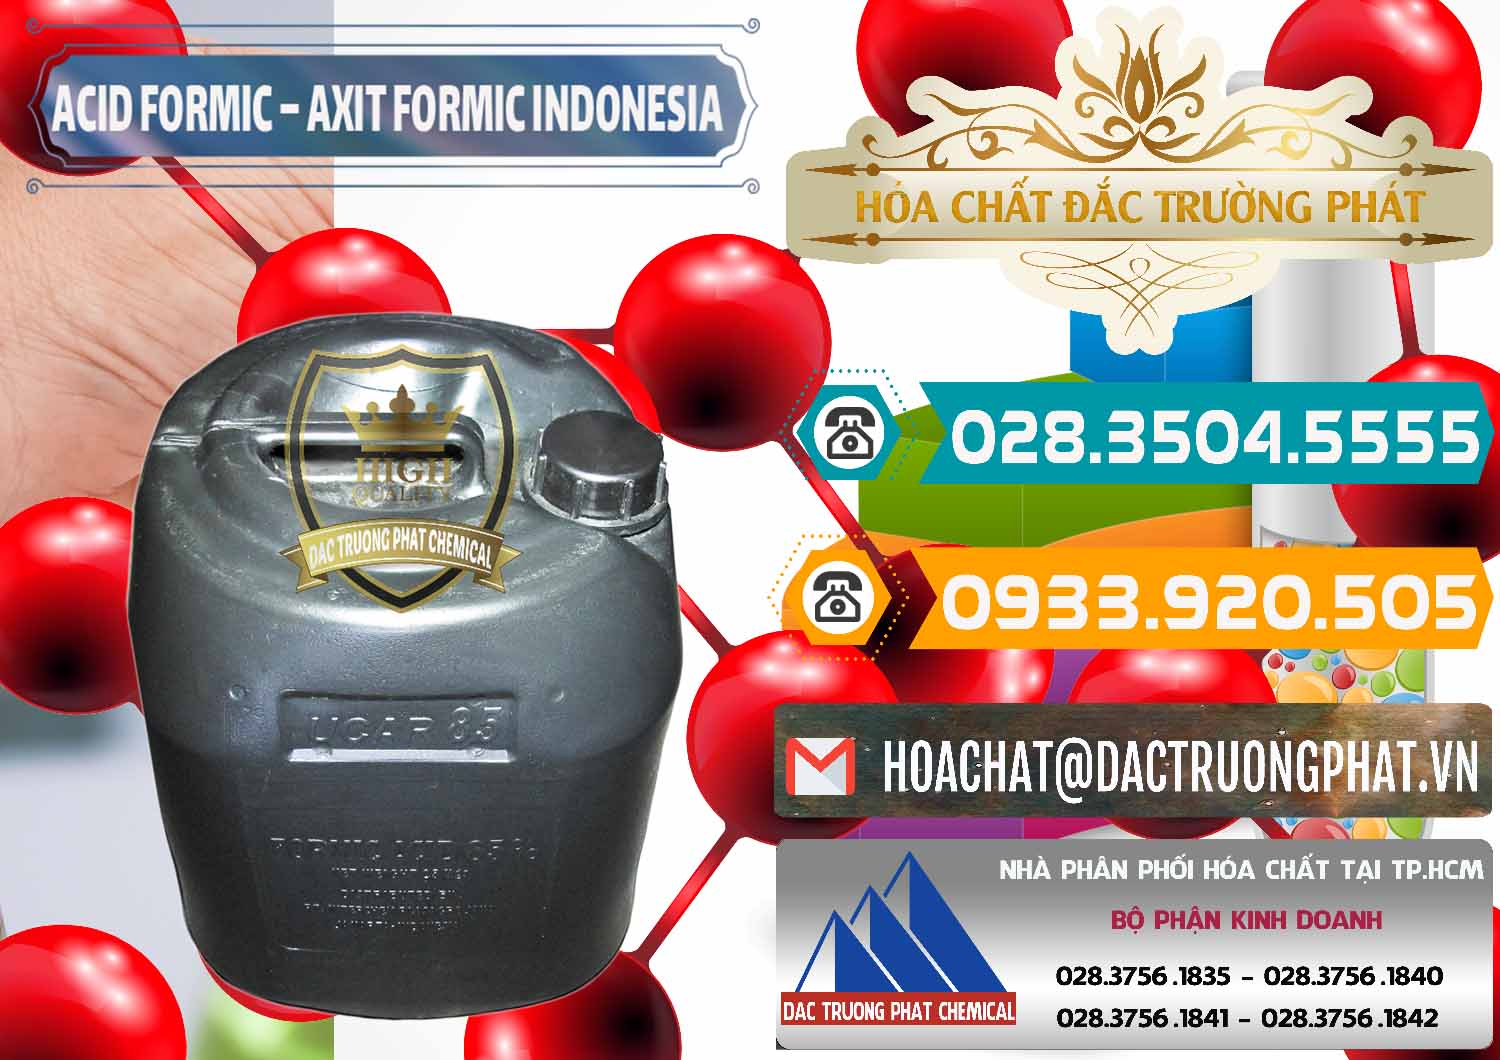 Cty chuyên bán ( phân phối ) Acid Formic - Axit Formic Indonesia - 0026 - Chuyên phân phối và kinh doanh hóa chất tại TP.HCM - congtyhoachat.vn